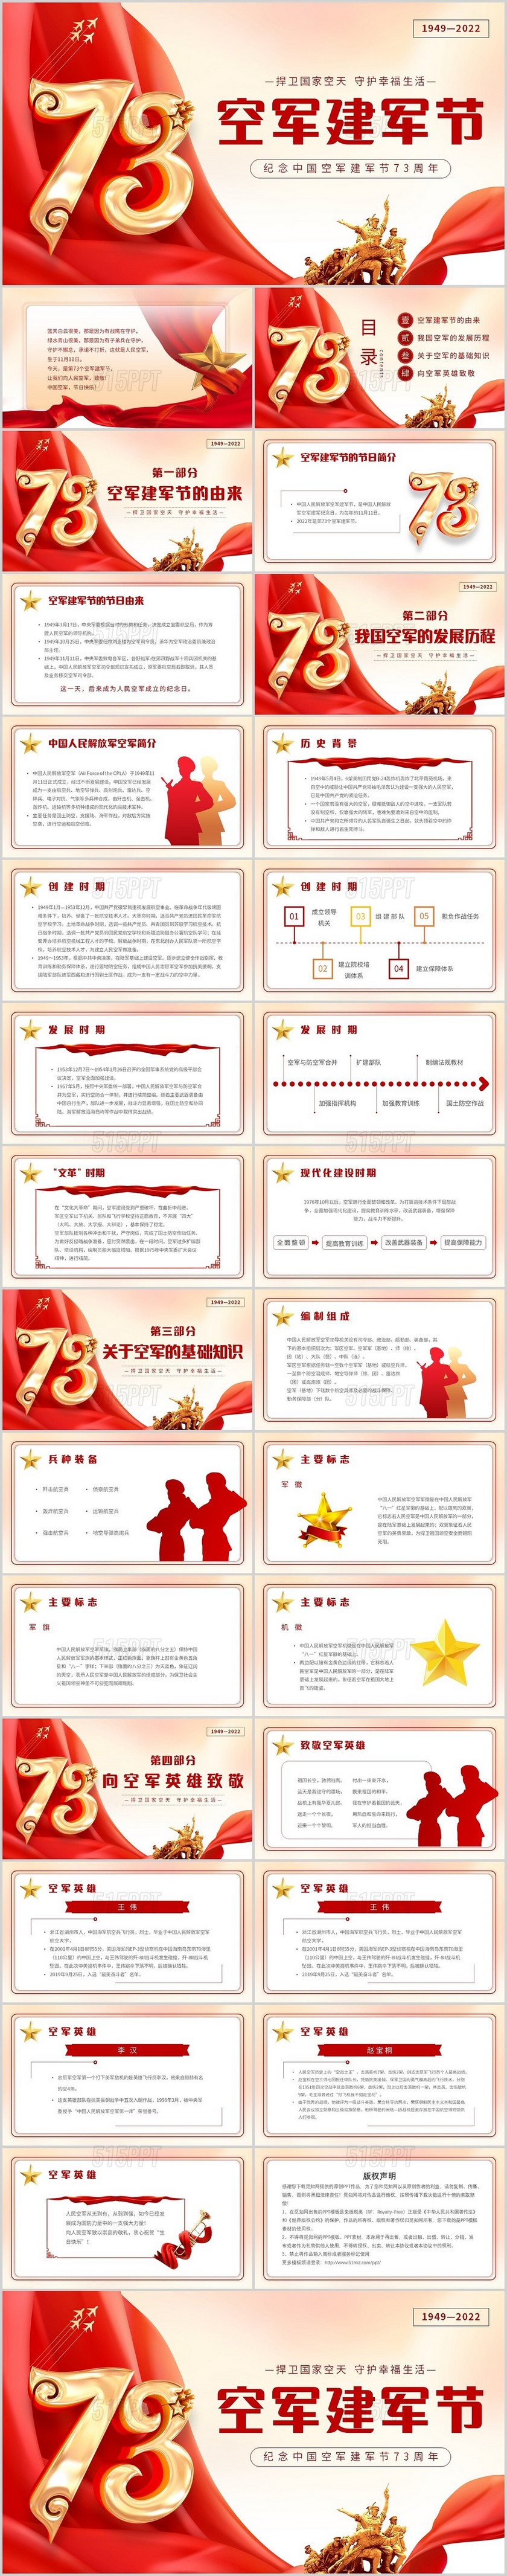 红色党政简约空军建军节纪念中国空军建军73周年主题PPT模板